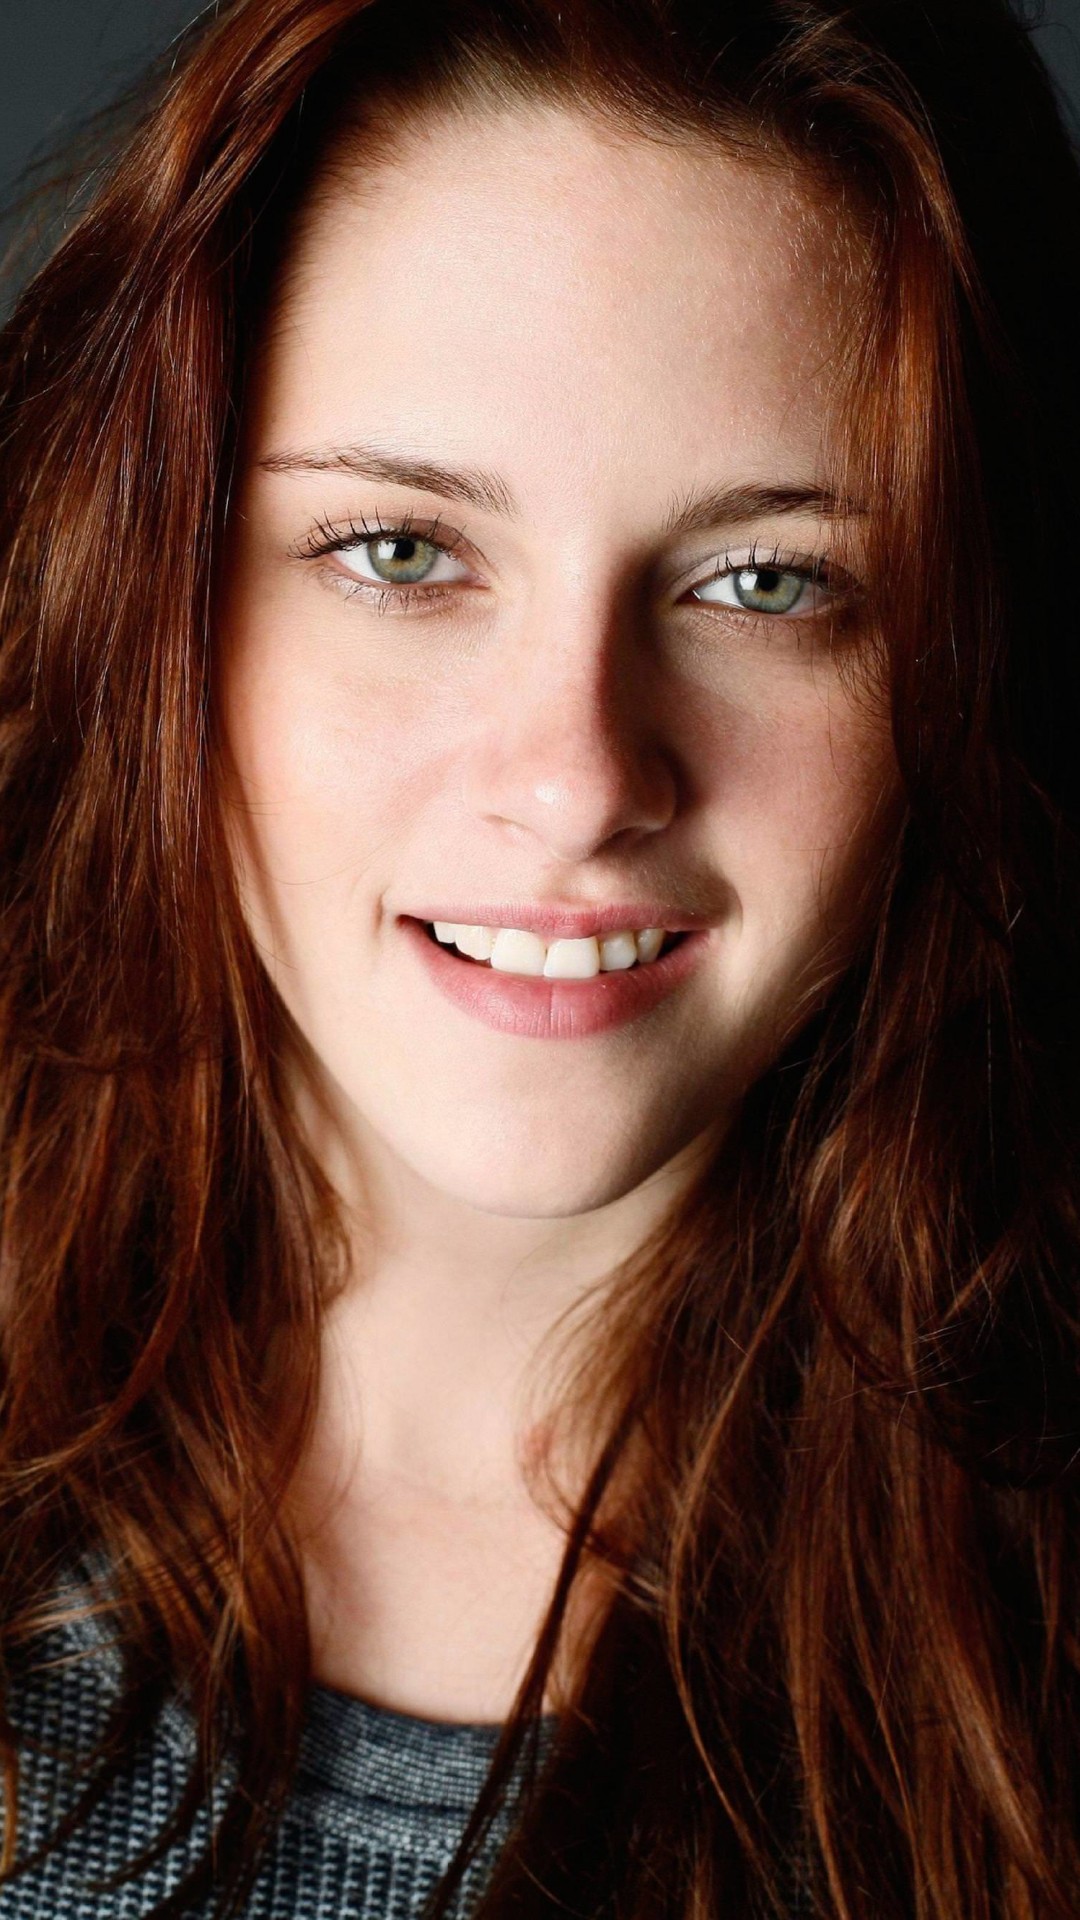 Kristen Stewart Portrait Wallpaper for SAMSUNG Galaxy Note 3